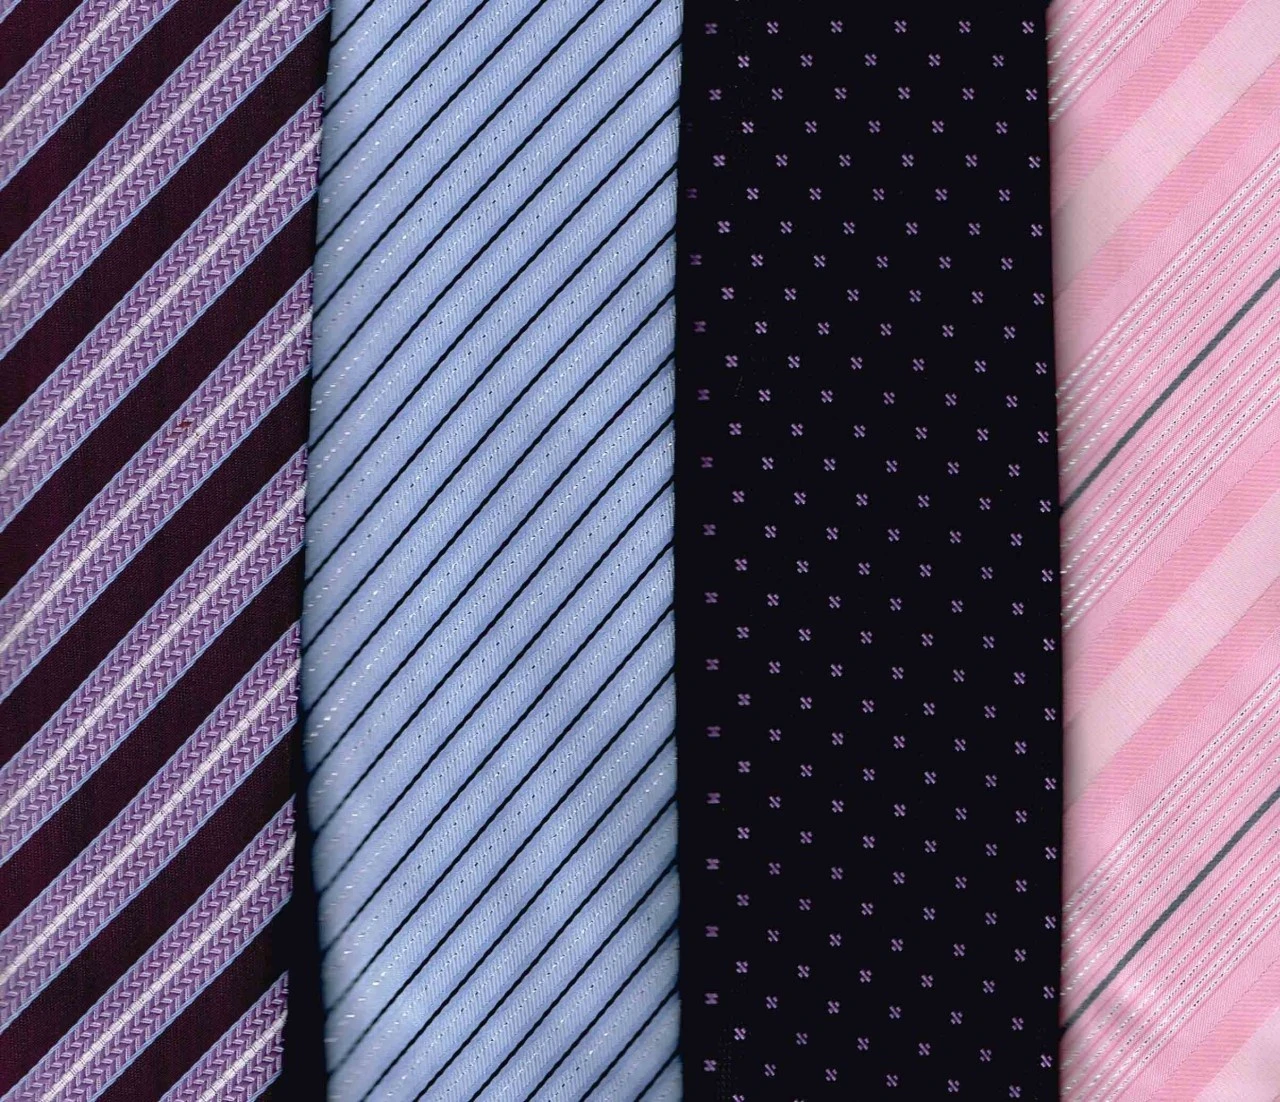 領帶 領結 圍巾 絲巾 代工 生產 製造